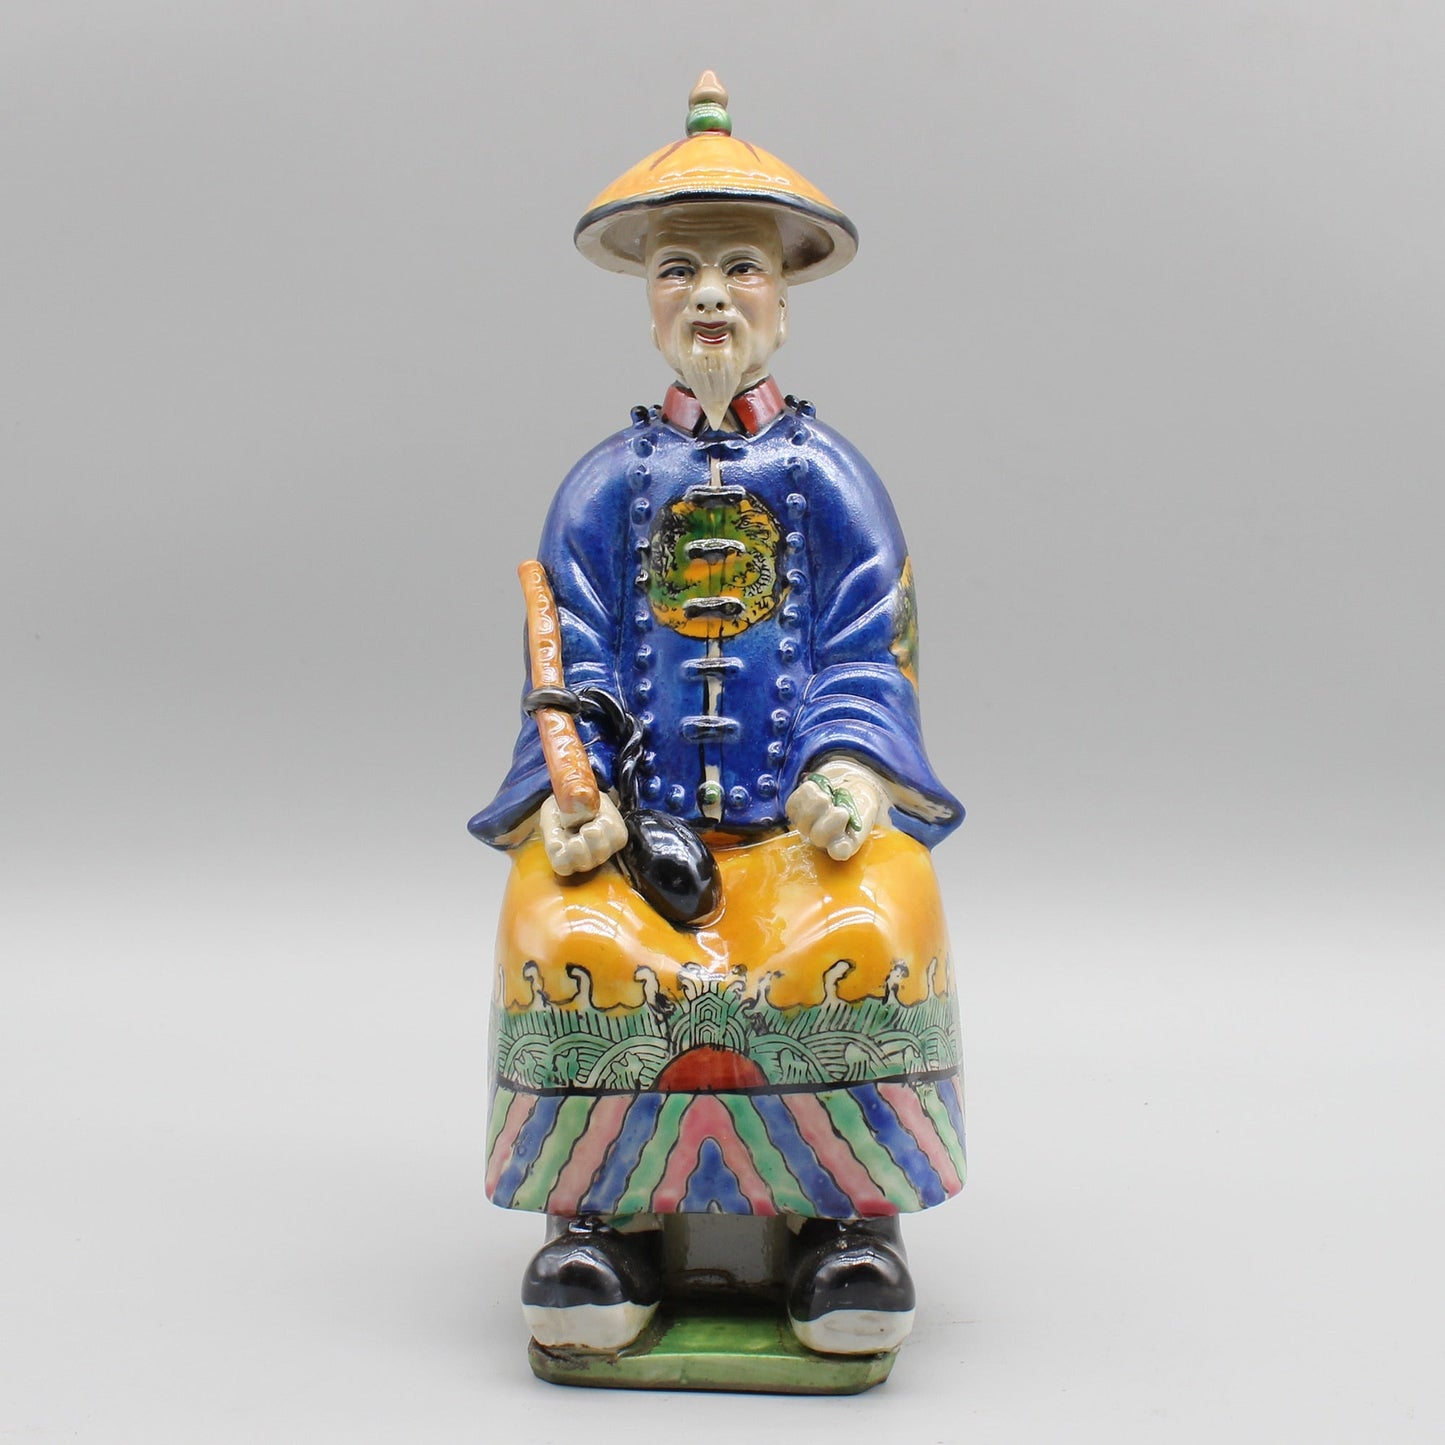 Keraaminen kiinalainen keisaripatsas, käsinmaalatut keraamiset hahmot, värikäs posliini, kodinsisustus